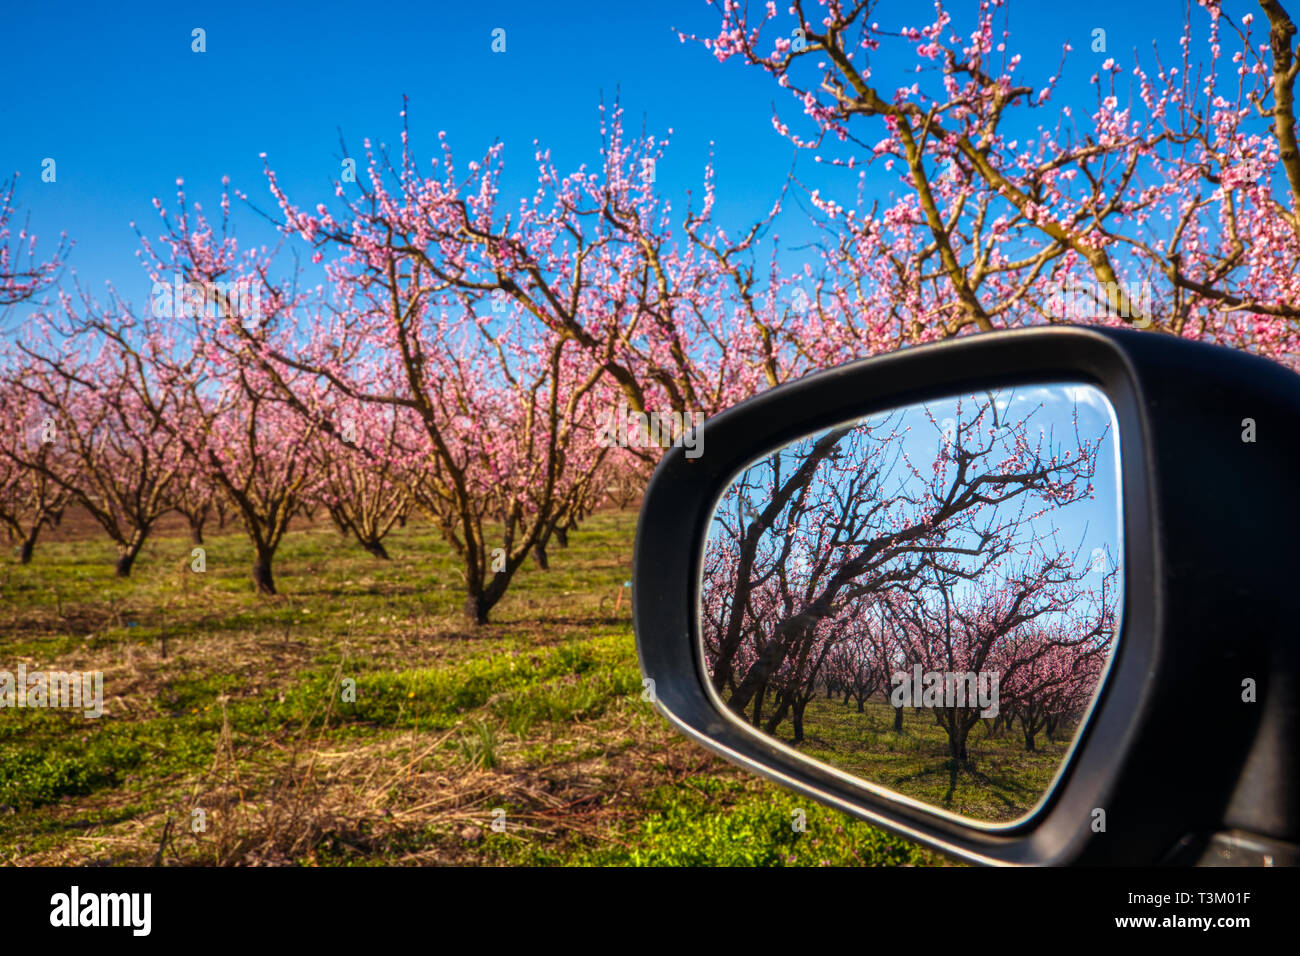 Reflexion der Obstgarten der Pfirsichbäume in in einem Auto Spiegel blühte Stockfoto